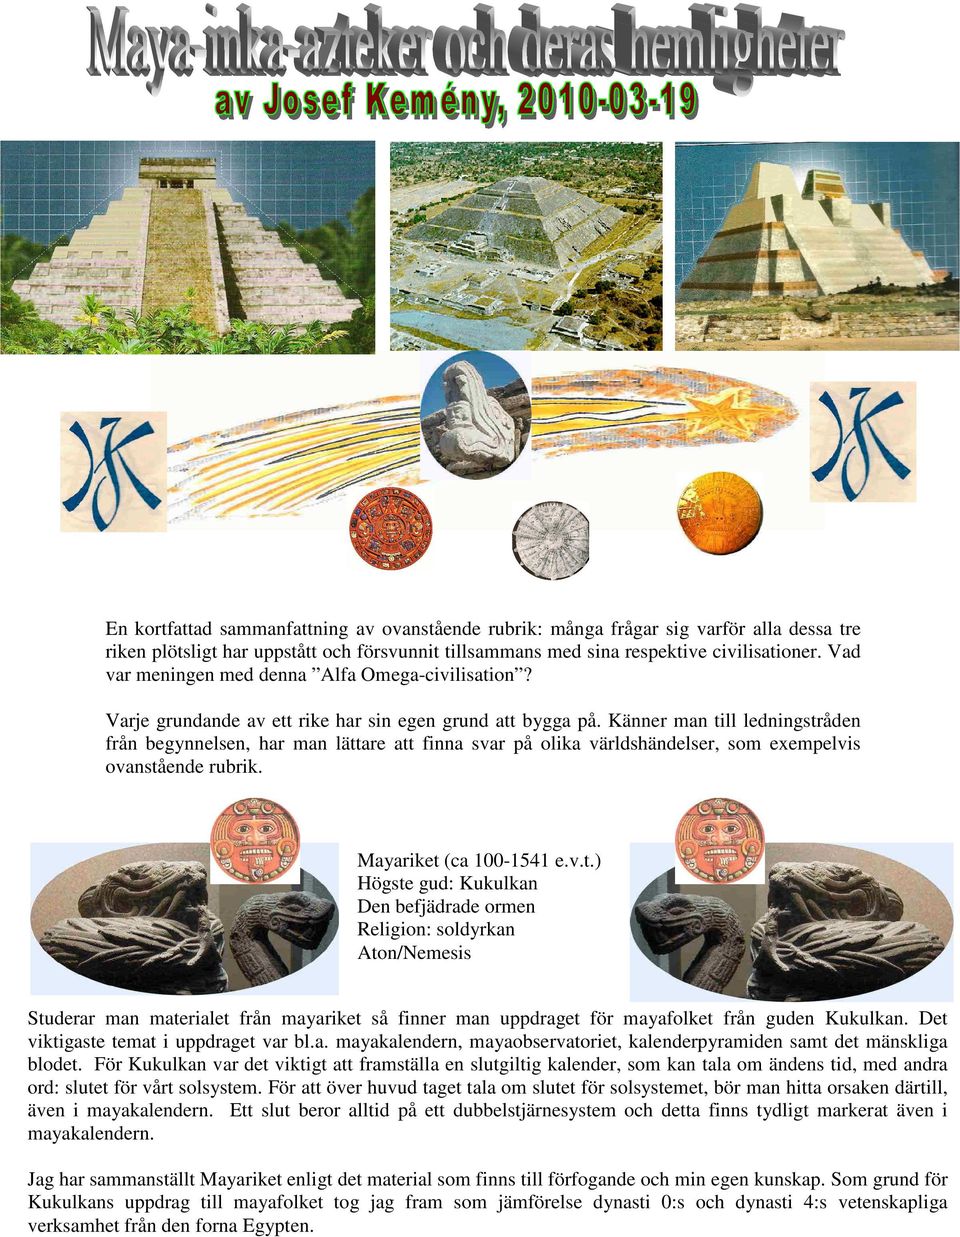 Känner man till ledningstråden från begynnelsen, har man lättare att finna svar på olika världshändelser, som exempelvis ovanstående rubrik. Mayariket (ca 100-1541 e.v.t.) Högste gud: Kukulkan Den befjädrade ormen Religion: soldyrkan Aton/Nemesis Studerar man materialet från mayariket så finner man uppdraget för mayafolket från guden Kukulkan.